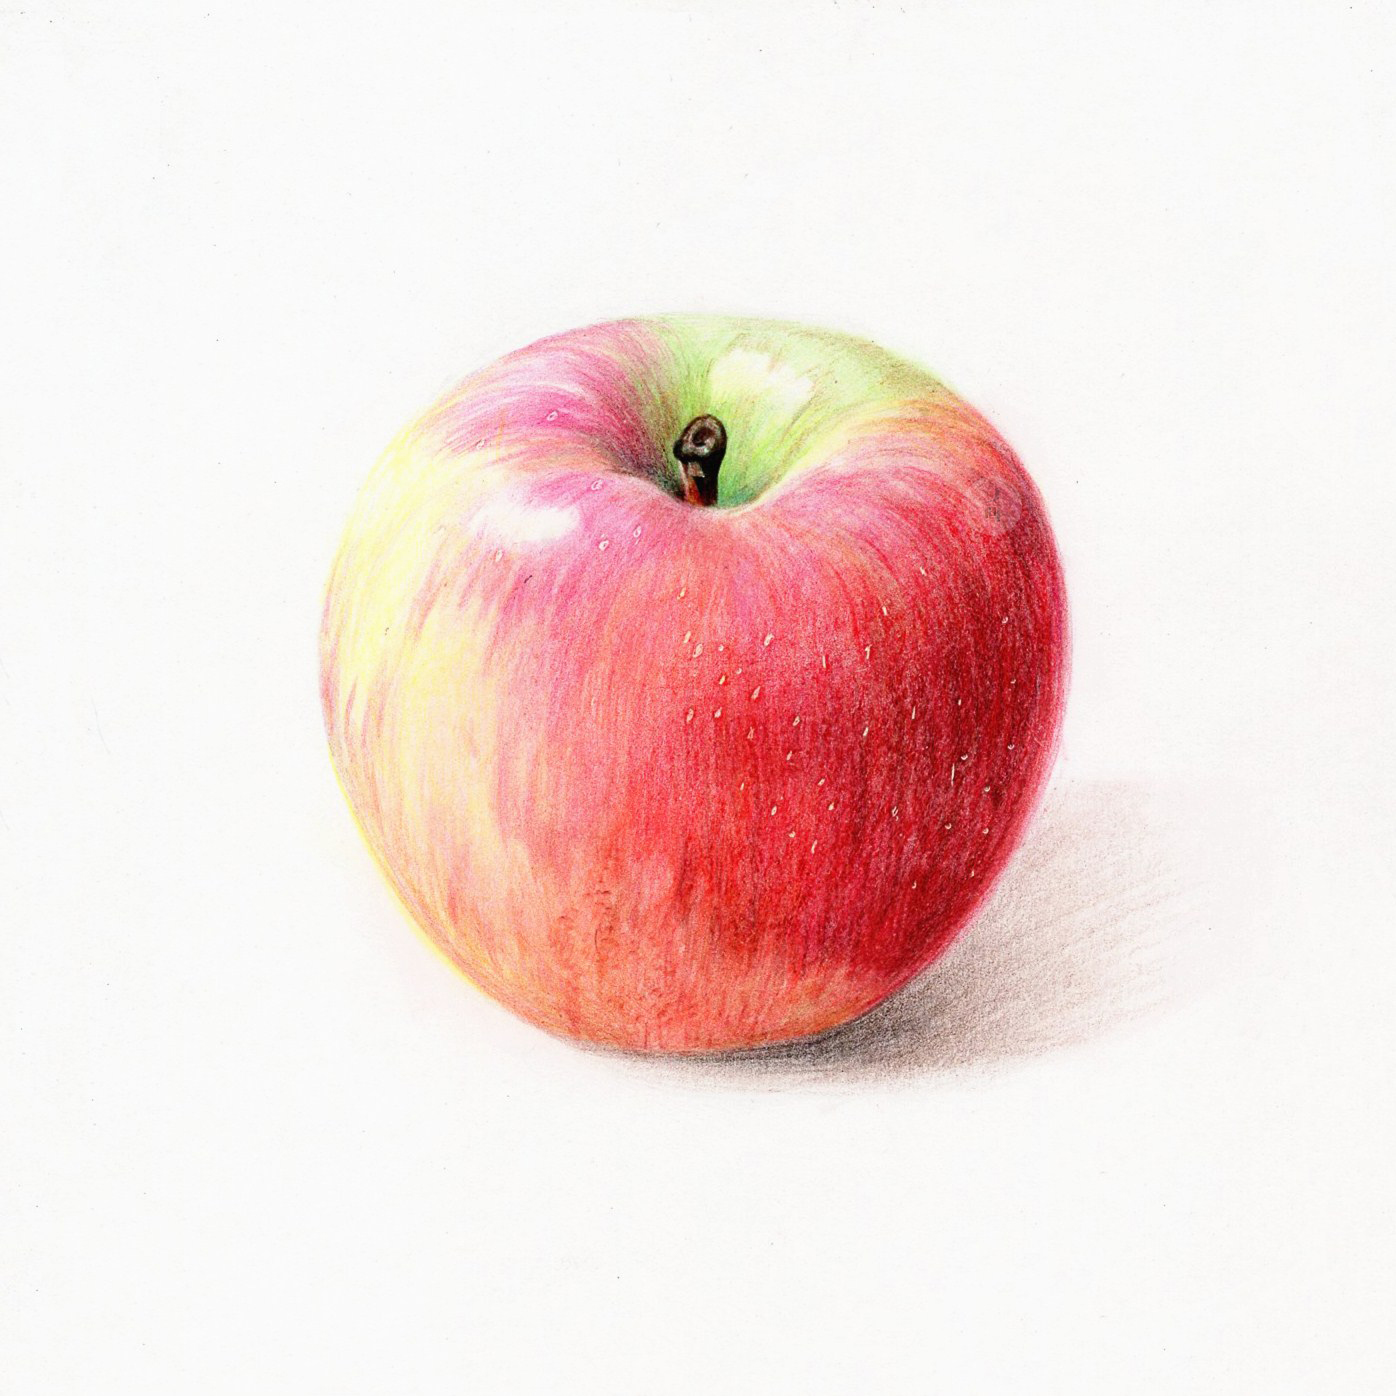 【彩铅】素描苹果画腻没,要不要搞一搞彩铅的苹果呀(～『～)